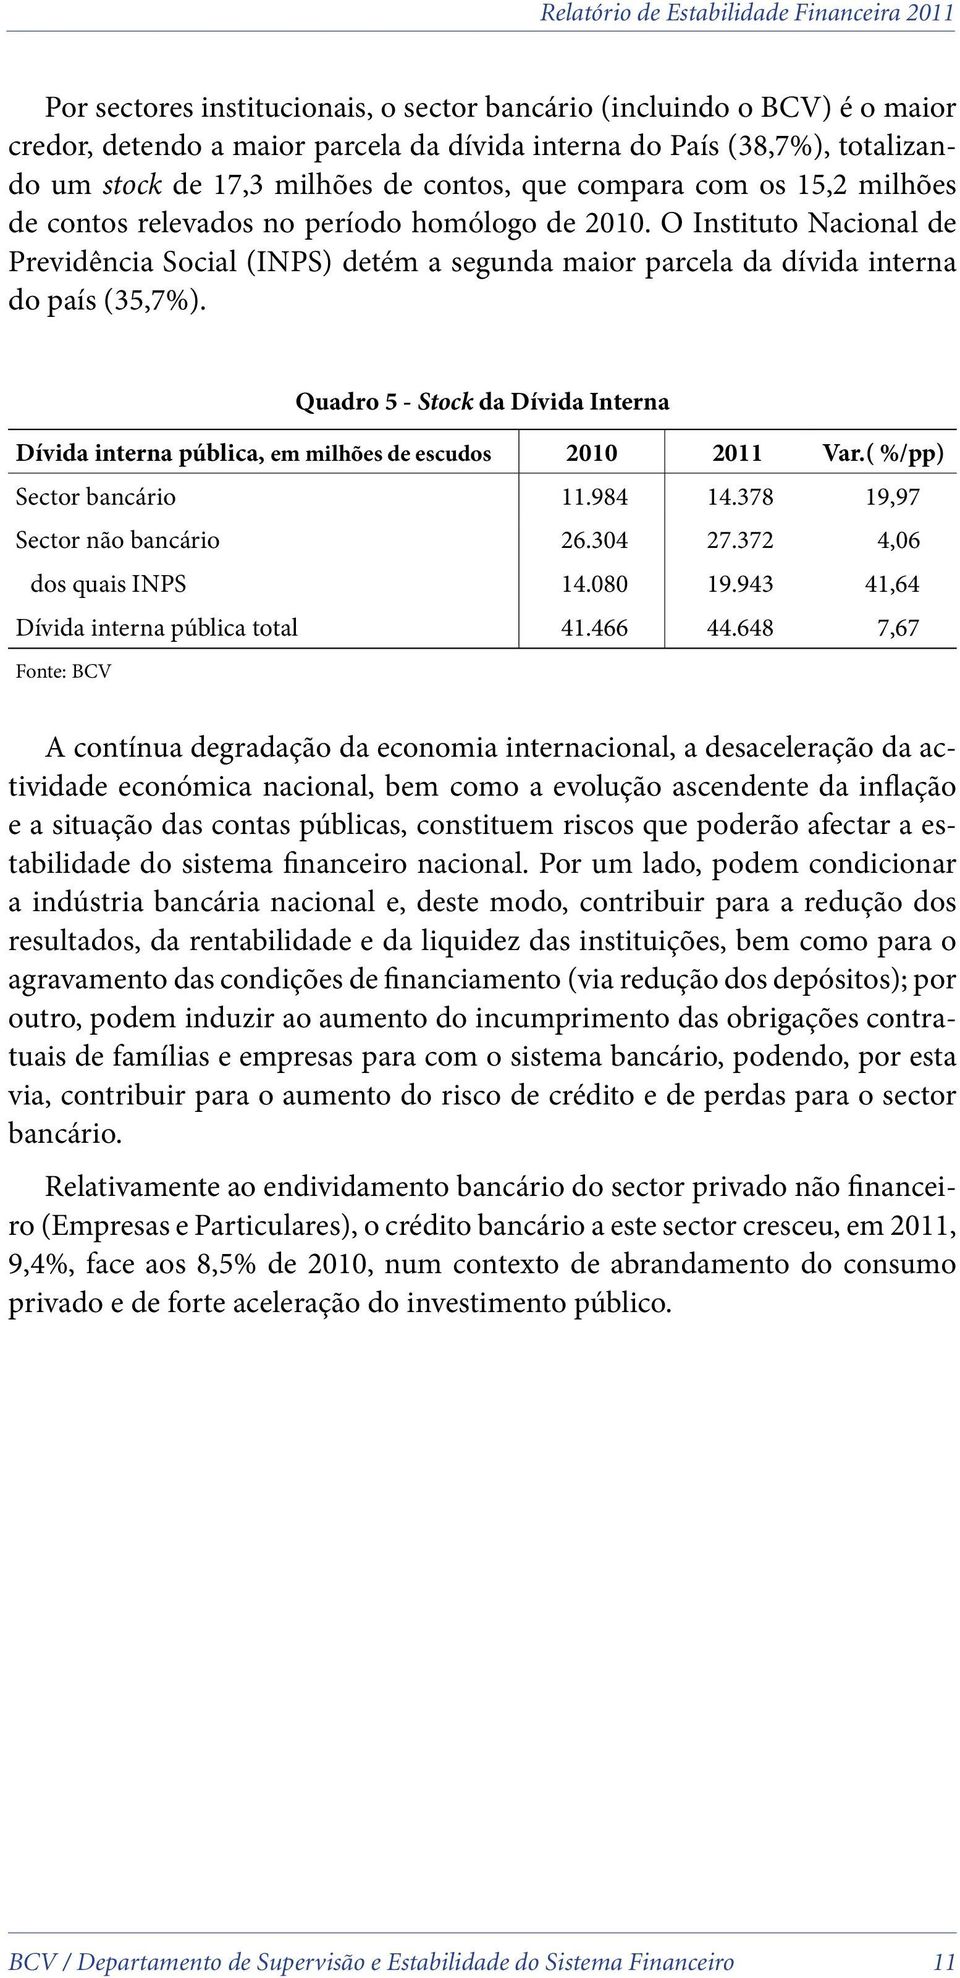 Quadro 5 - Stock da Dívida Interna Dívida interna pública, em milhões de escudos 2010 2011 Var.( %/pp) Sector bancário 11.984 14.378 19,97 Sector não bancário 26.304 27.372 4,06 dos quais INPS 14.